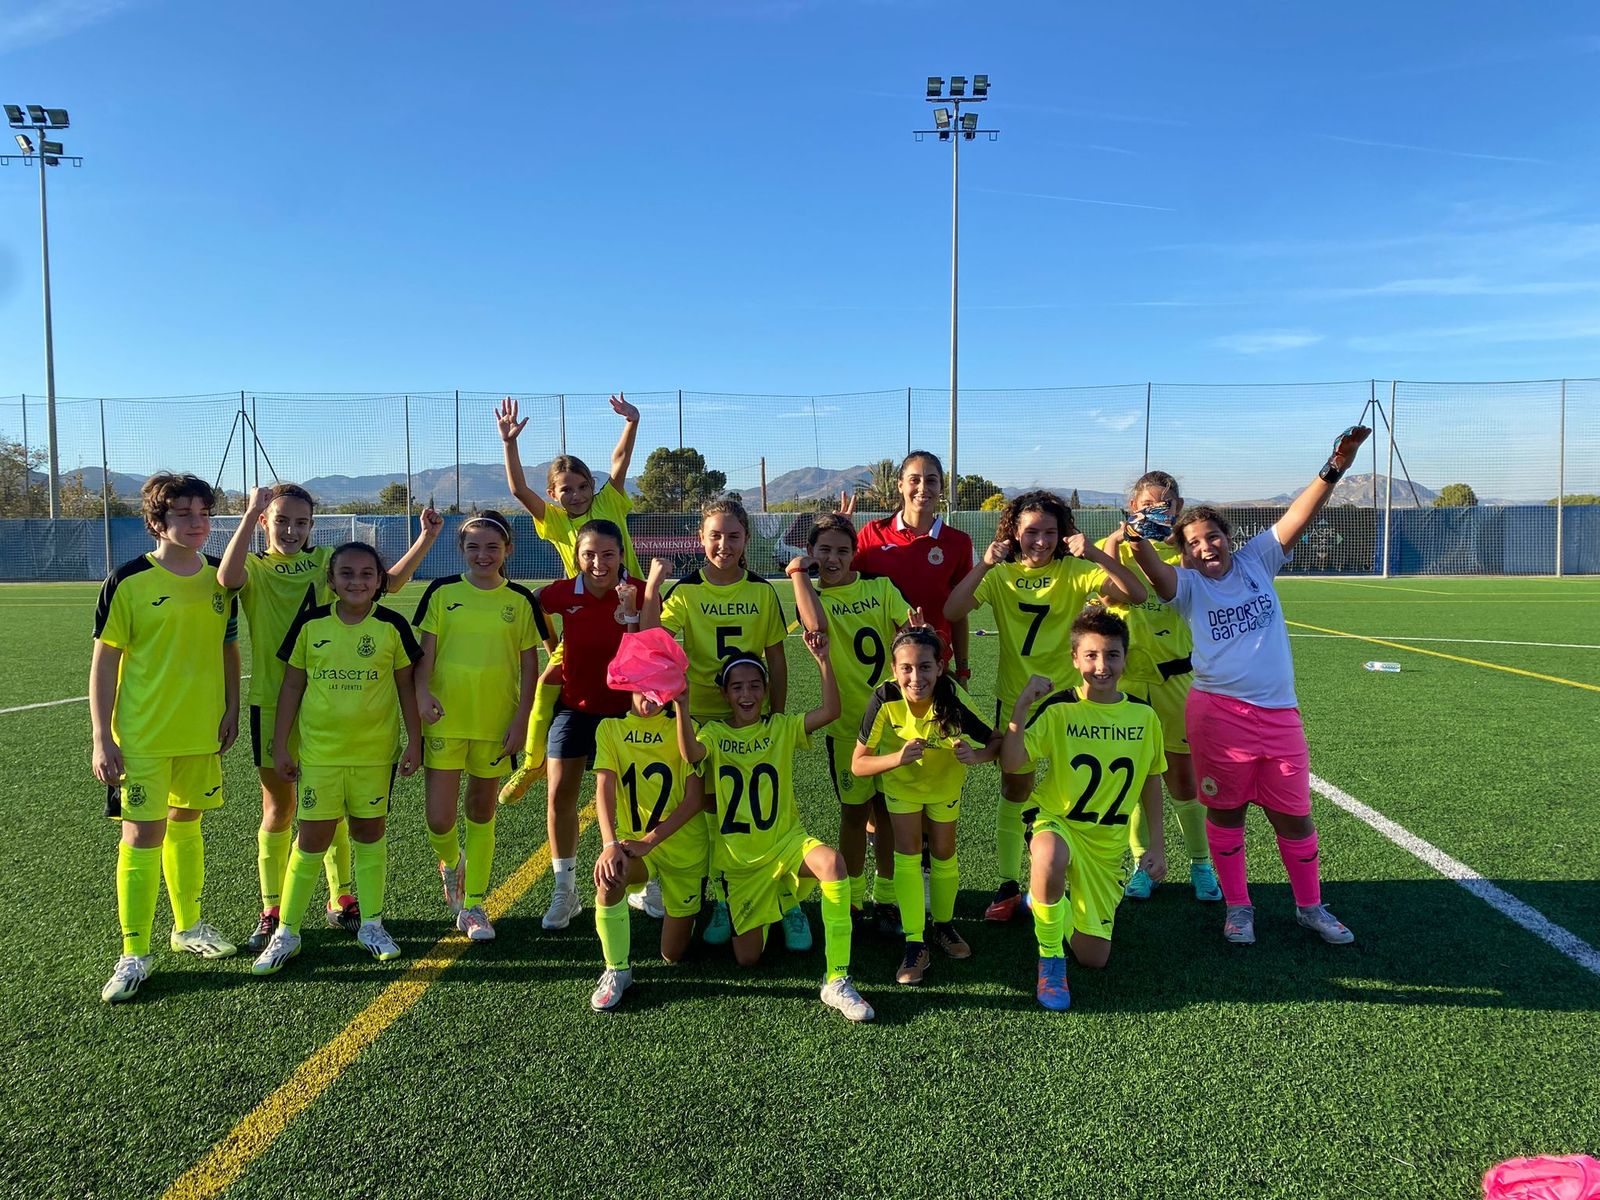 El domingo, 16 de junio, el Atlético de Aspe organiza la tercera edición del “Torneo La Serranica” de fútbol femenino